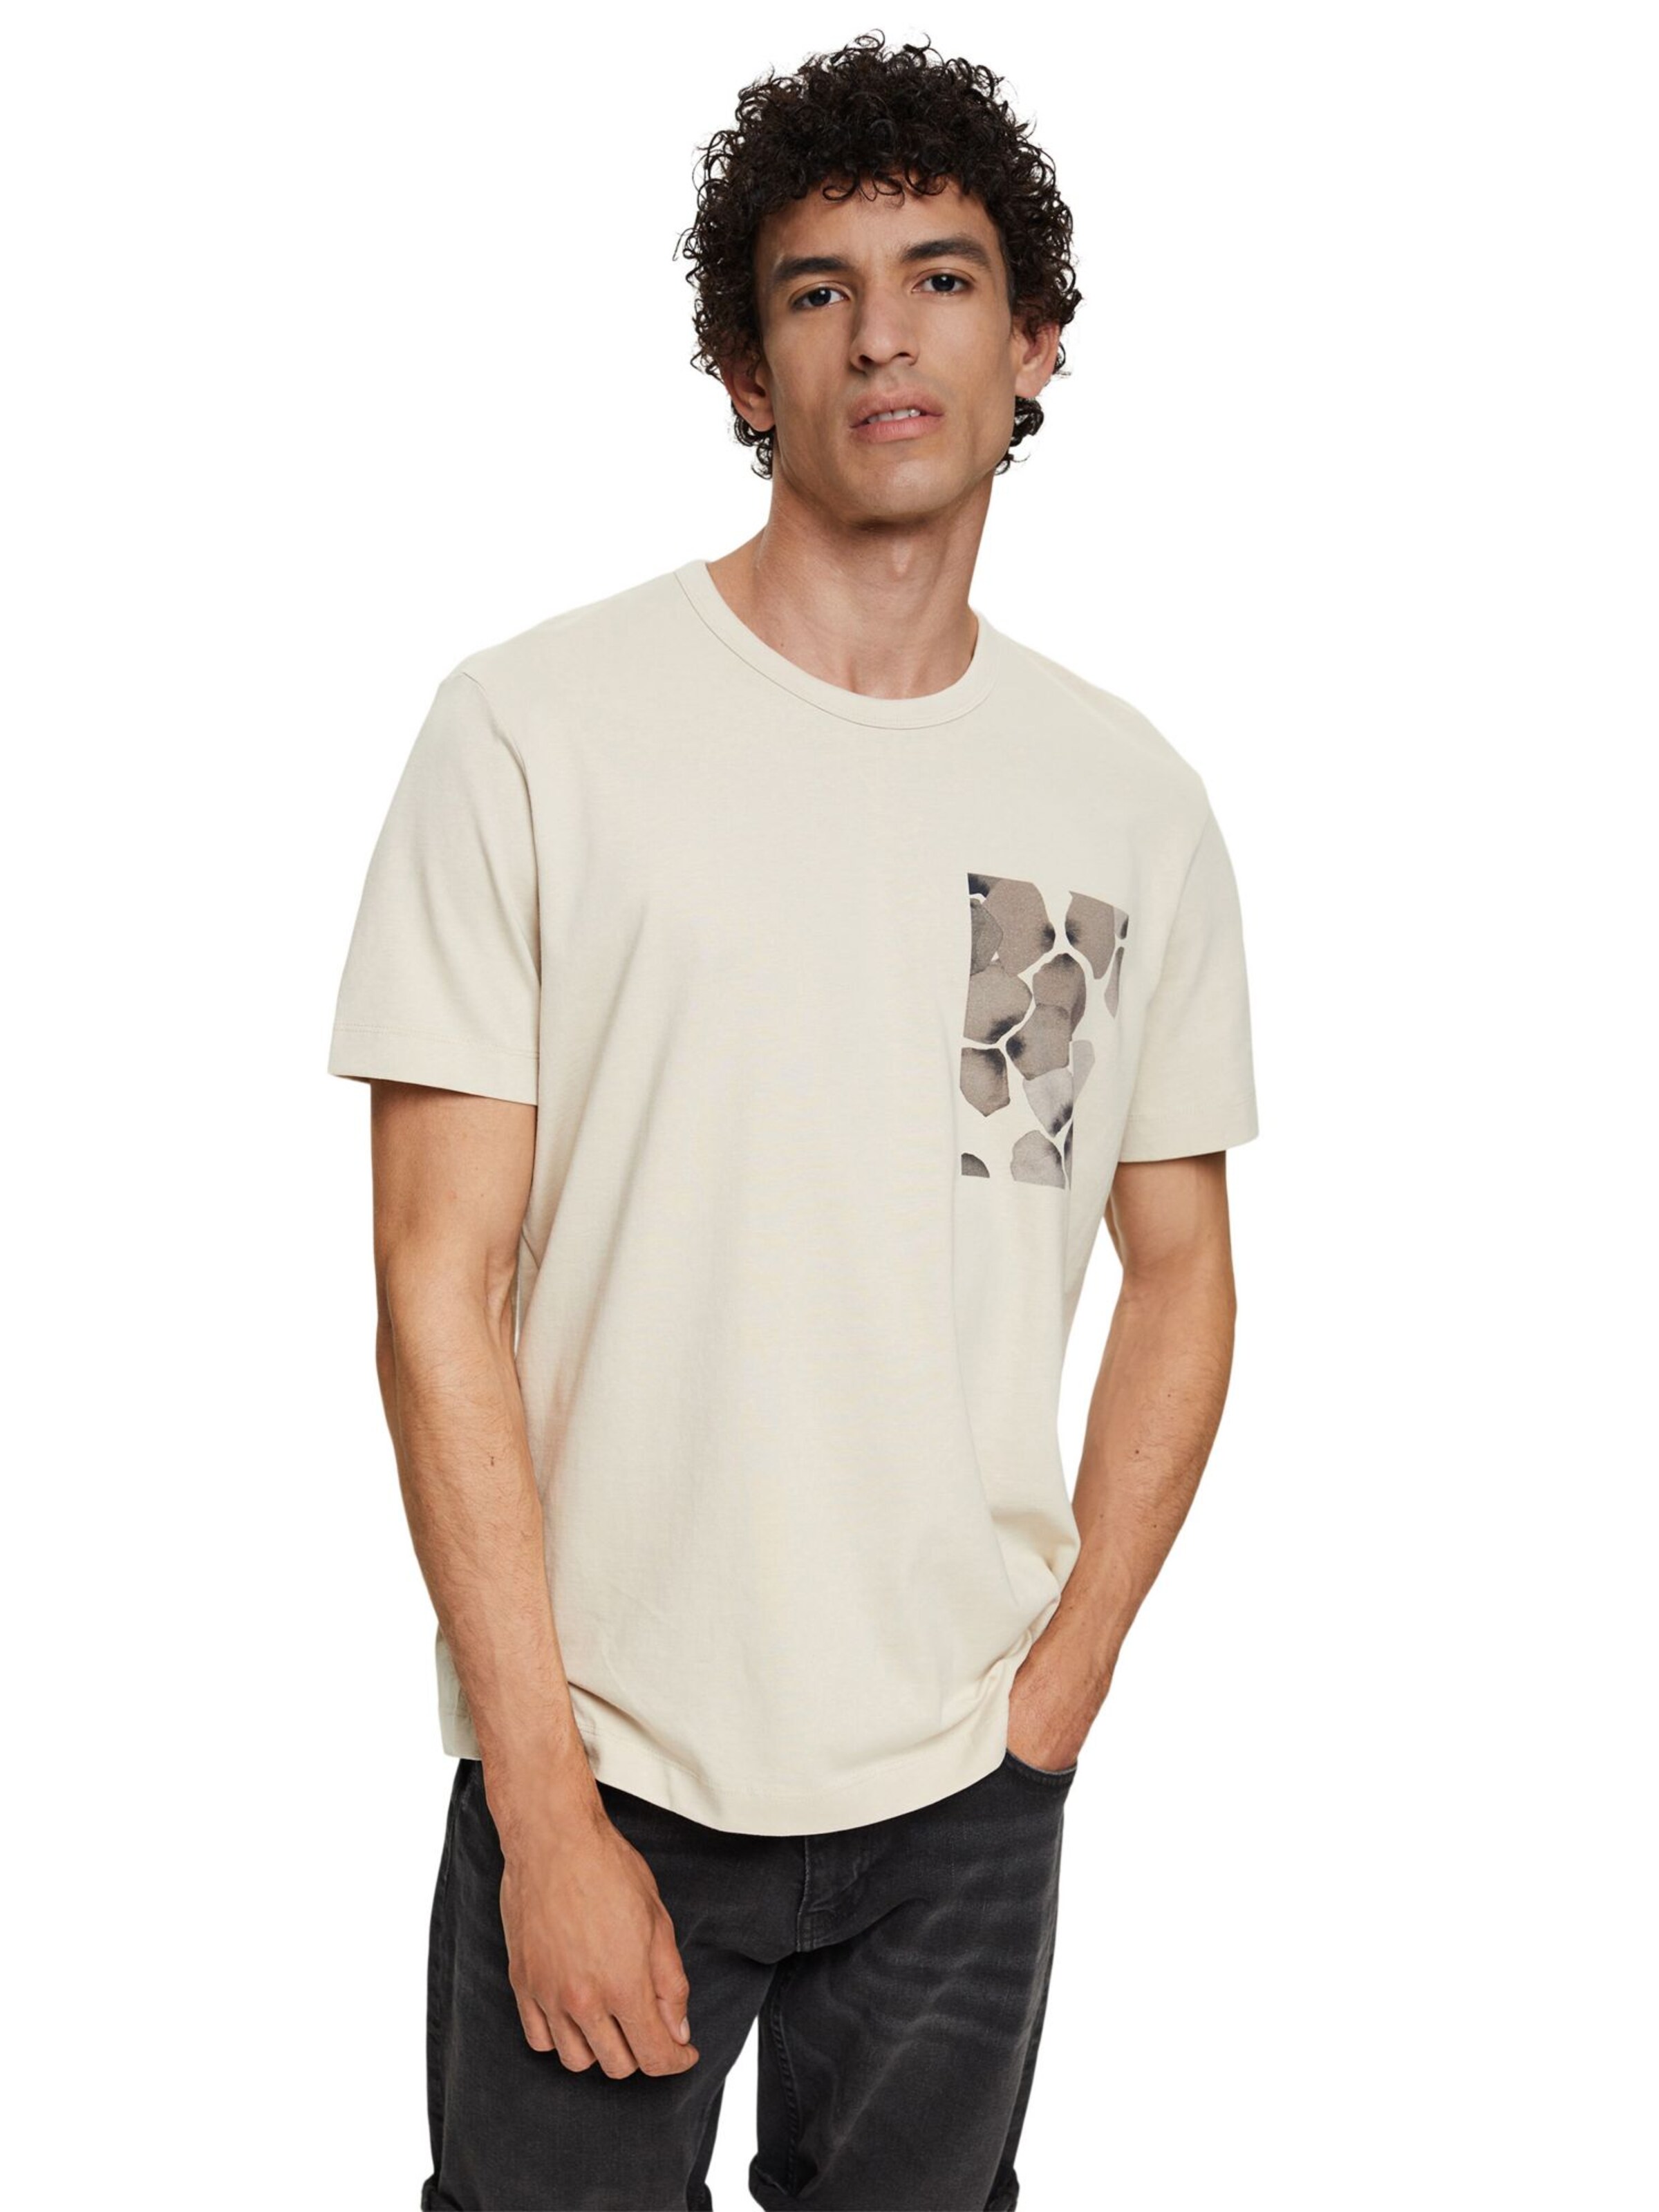 Männer Shirts Esprit Collection Shirt in Hellbeige, Dunkelbeige - AC25947